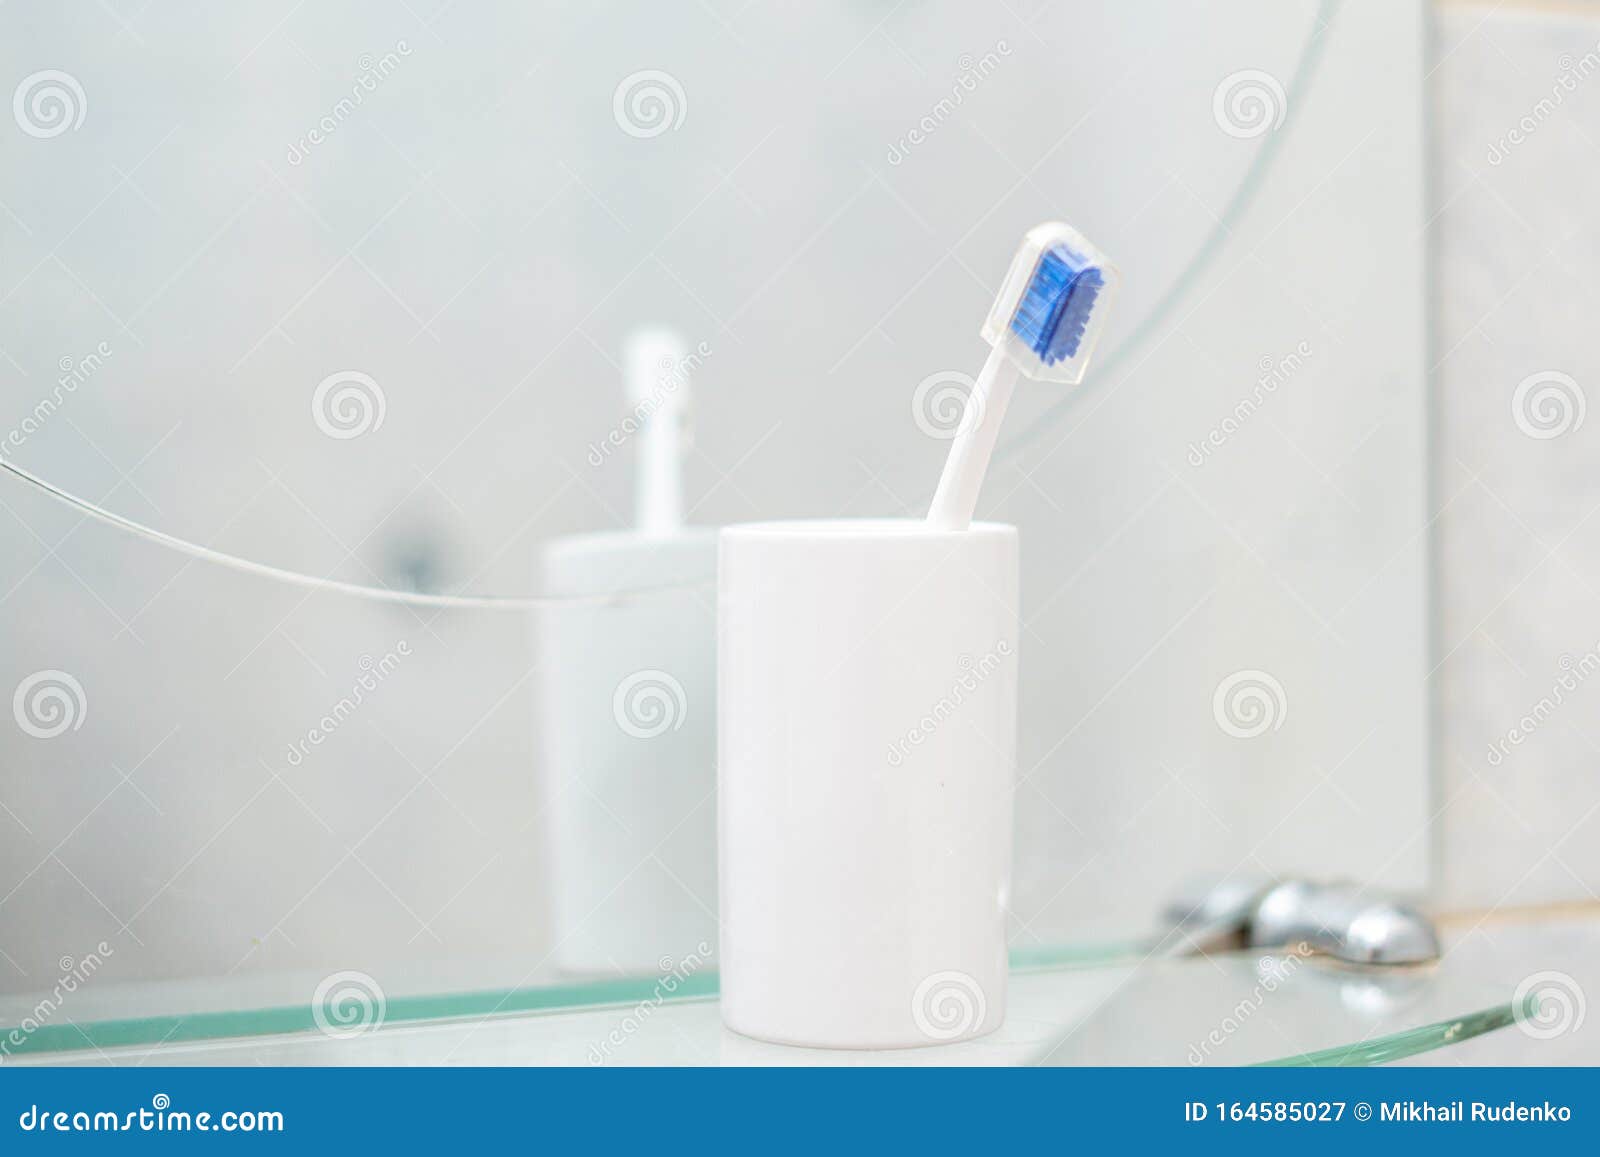 Un Simple Cepillo De Dientes En Un Vaso De Baño Imagen de archivo - Imagen  de higiene, toothpaste: 164585027